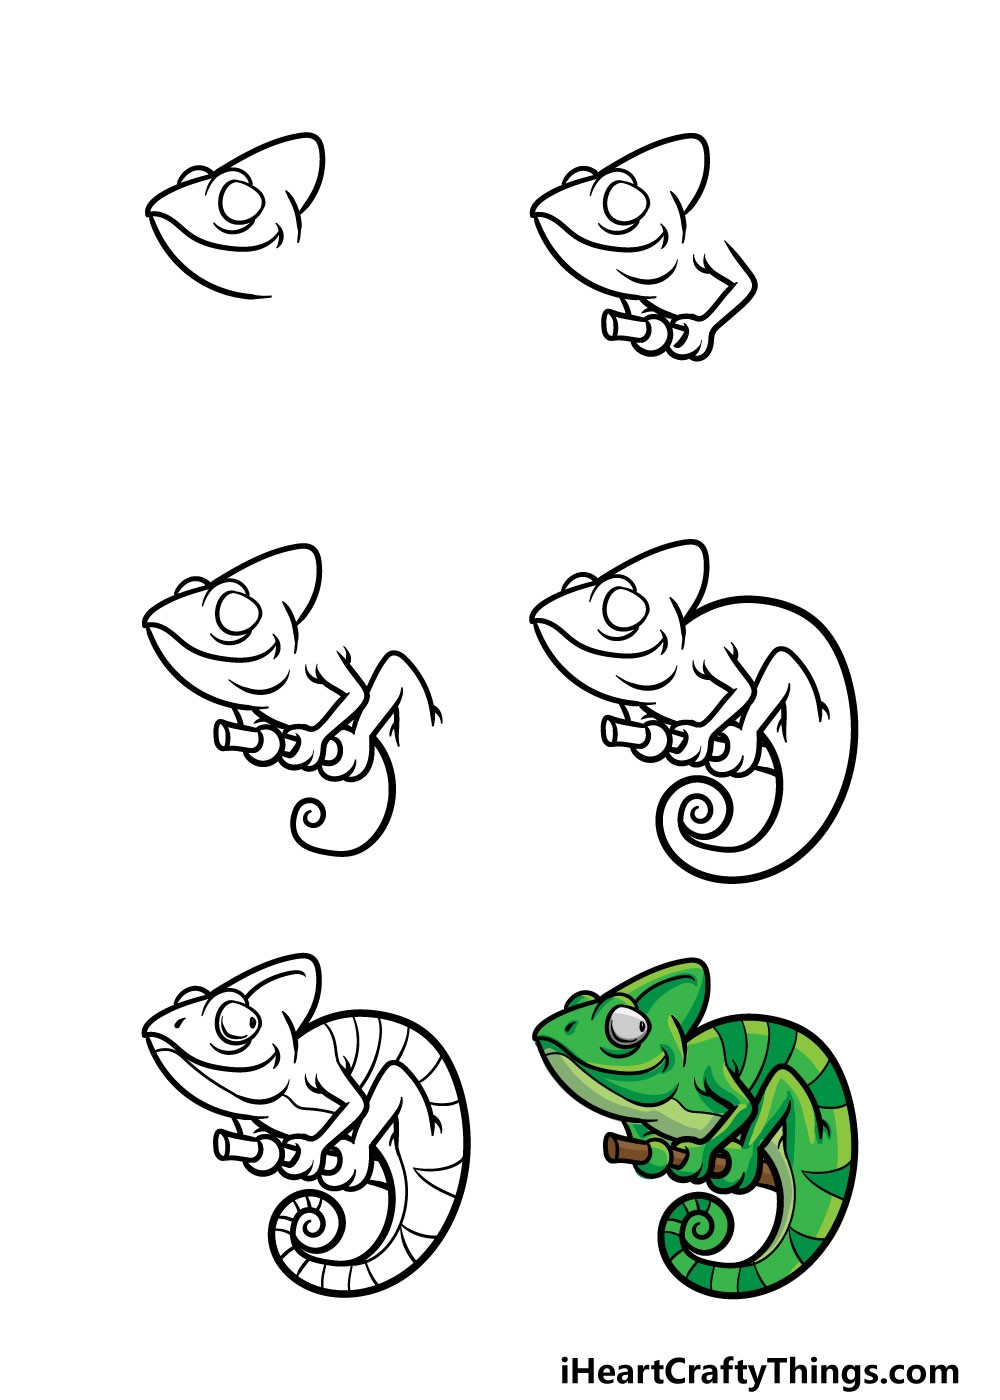 Gecko-Idee 6 zeichnen ideen